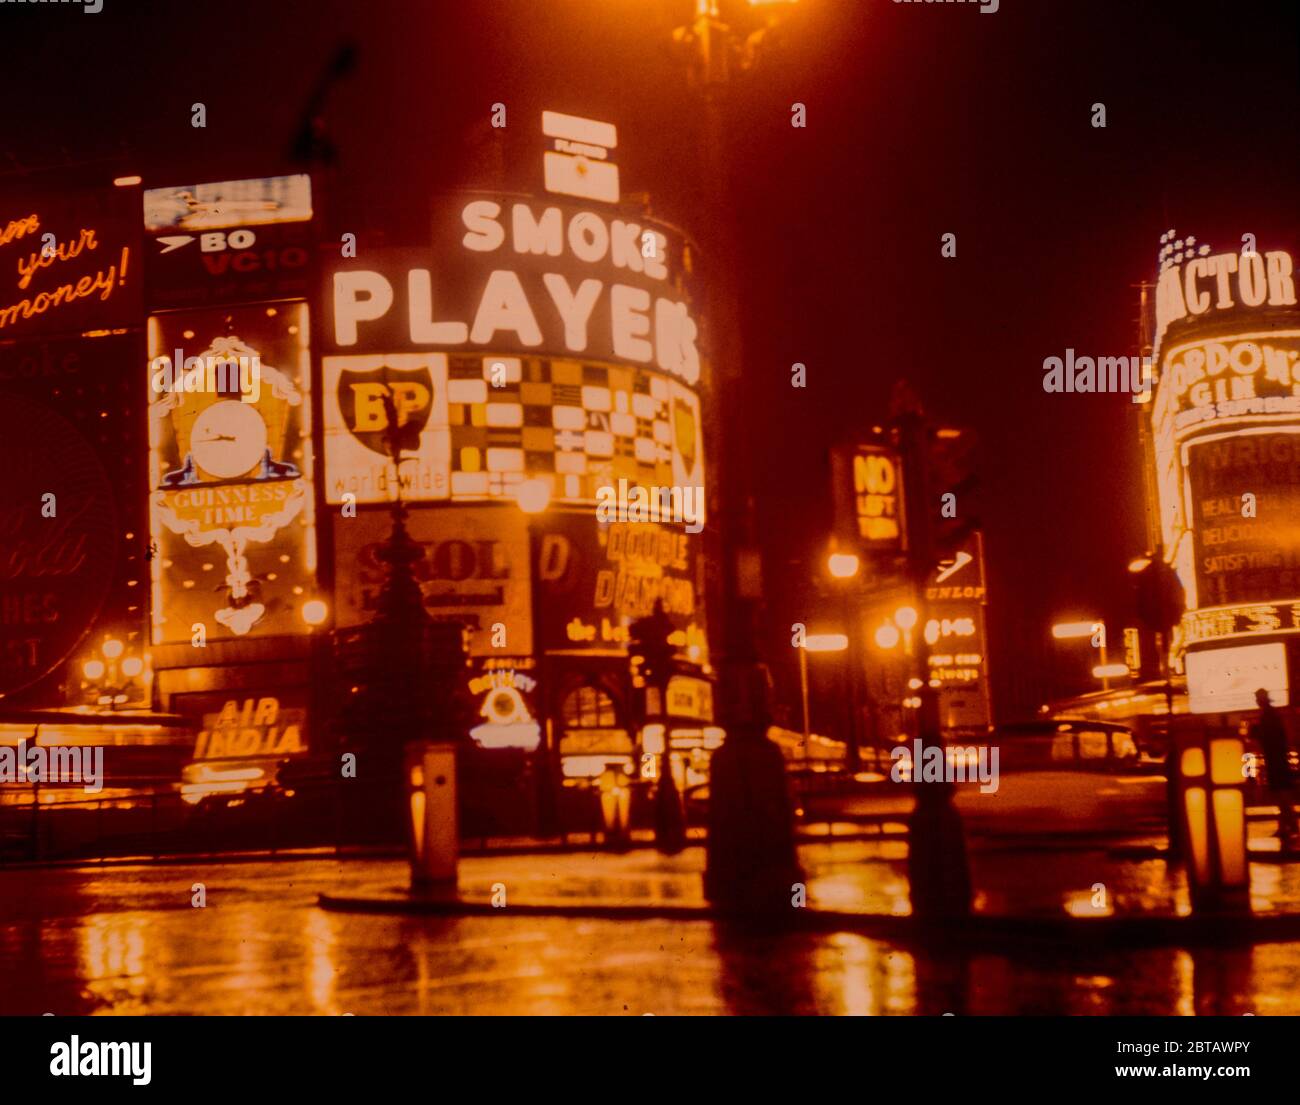 Les enseignes au néon de Piccadilly Circus se reflètent dans la pluie de nuit dans la rue, faisant la publicité des produits et des films populaires des années 1960, pris en 1961. Banque D'Images